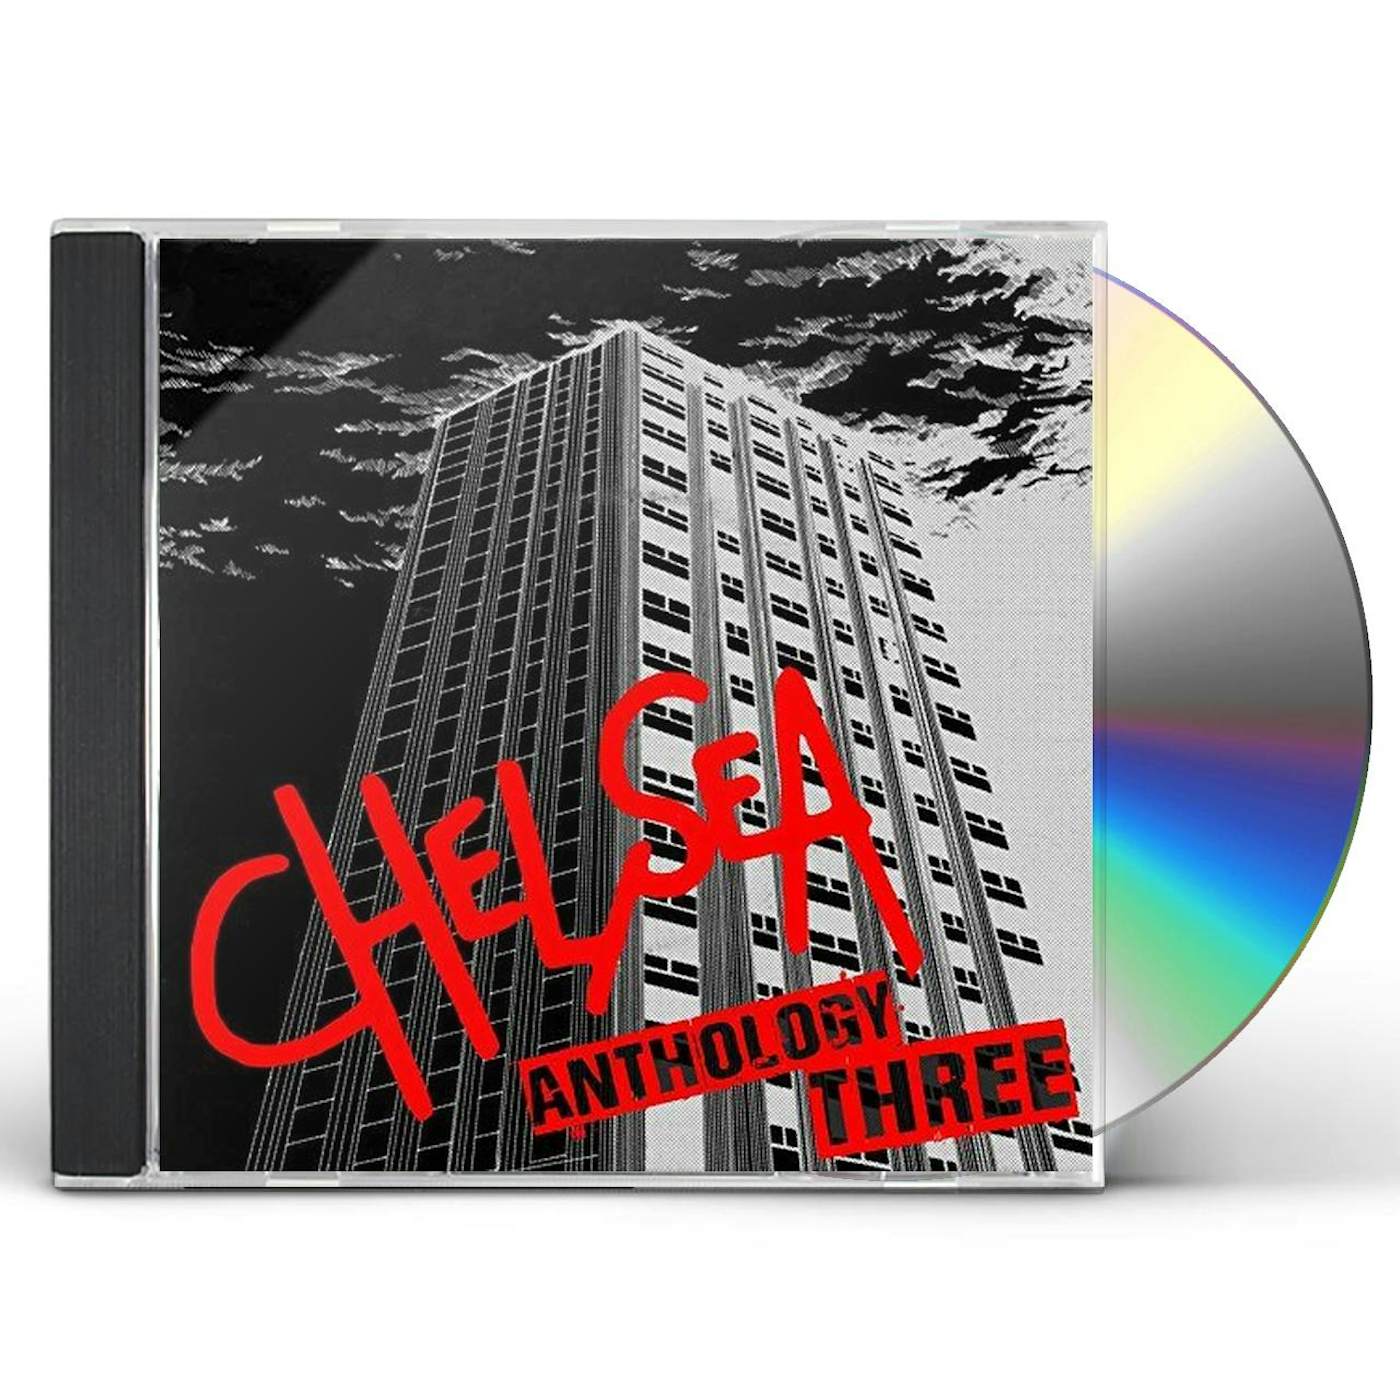 Chelsea ANTHOLOGY 3 CD